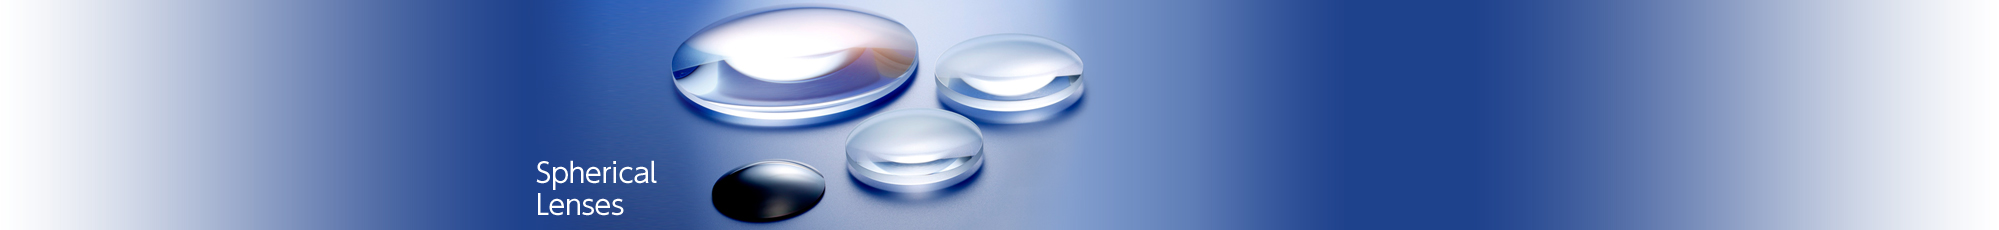 Spherical Lenses / Cylindrical Lenses